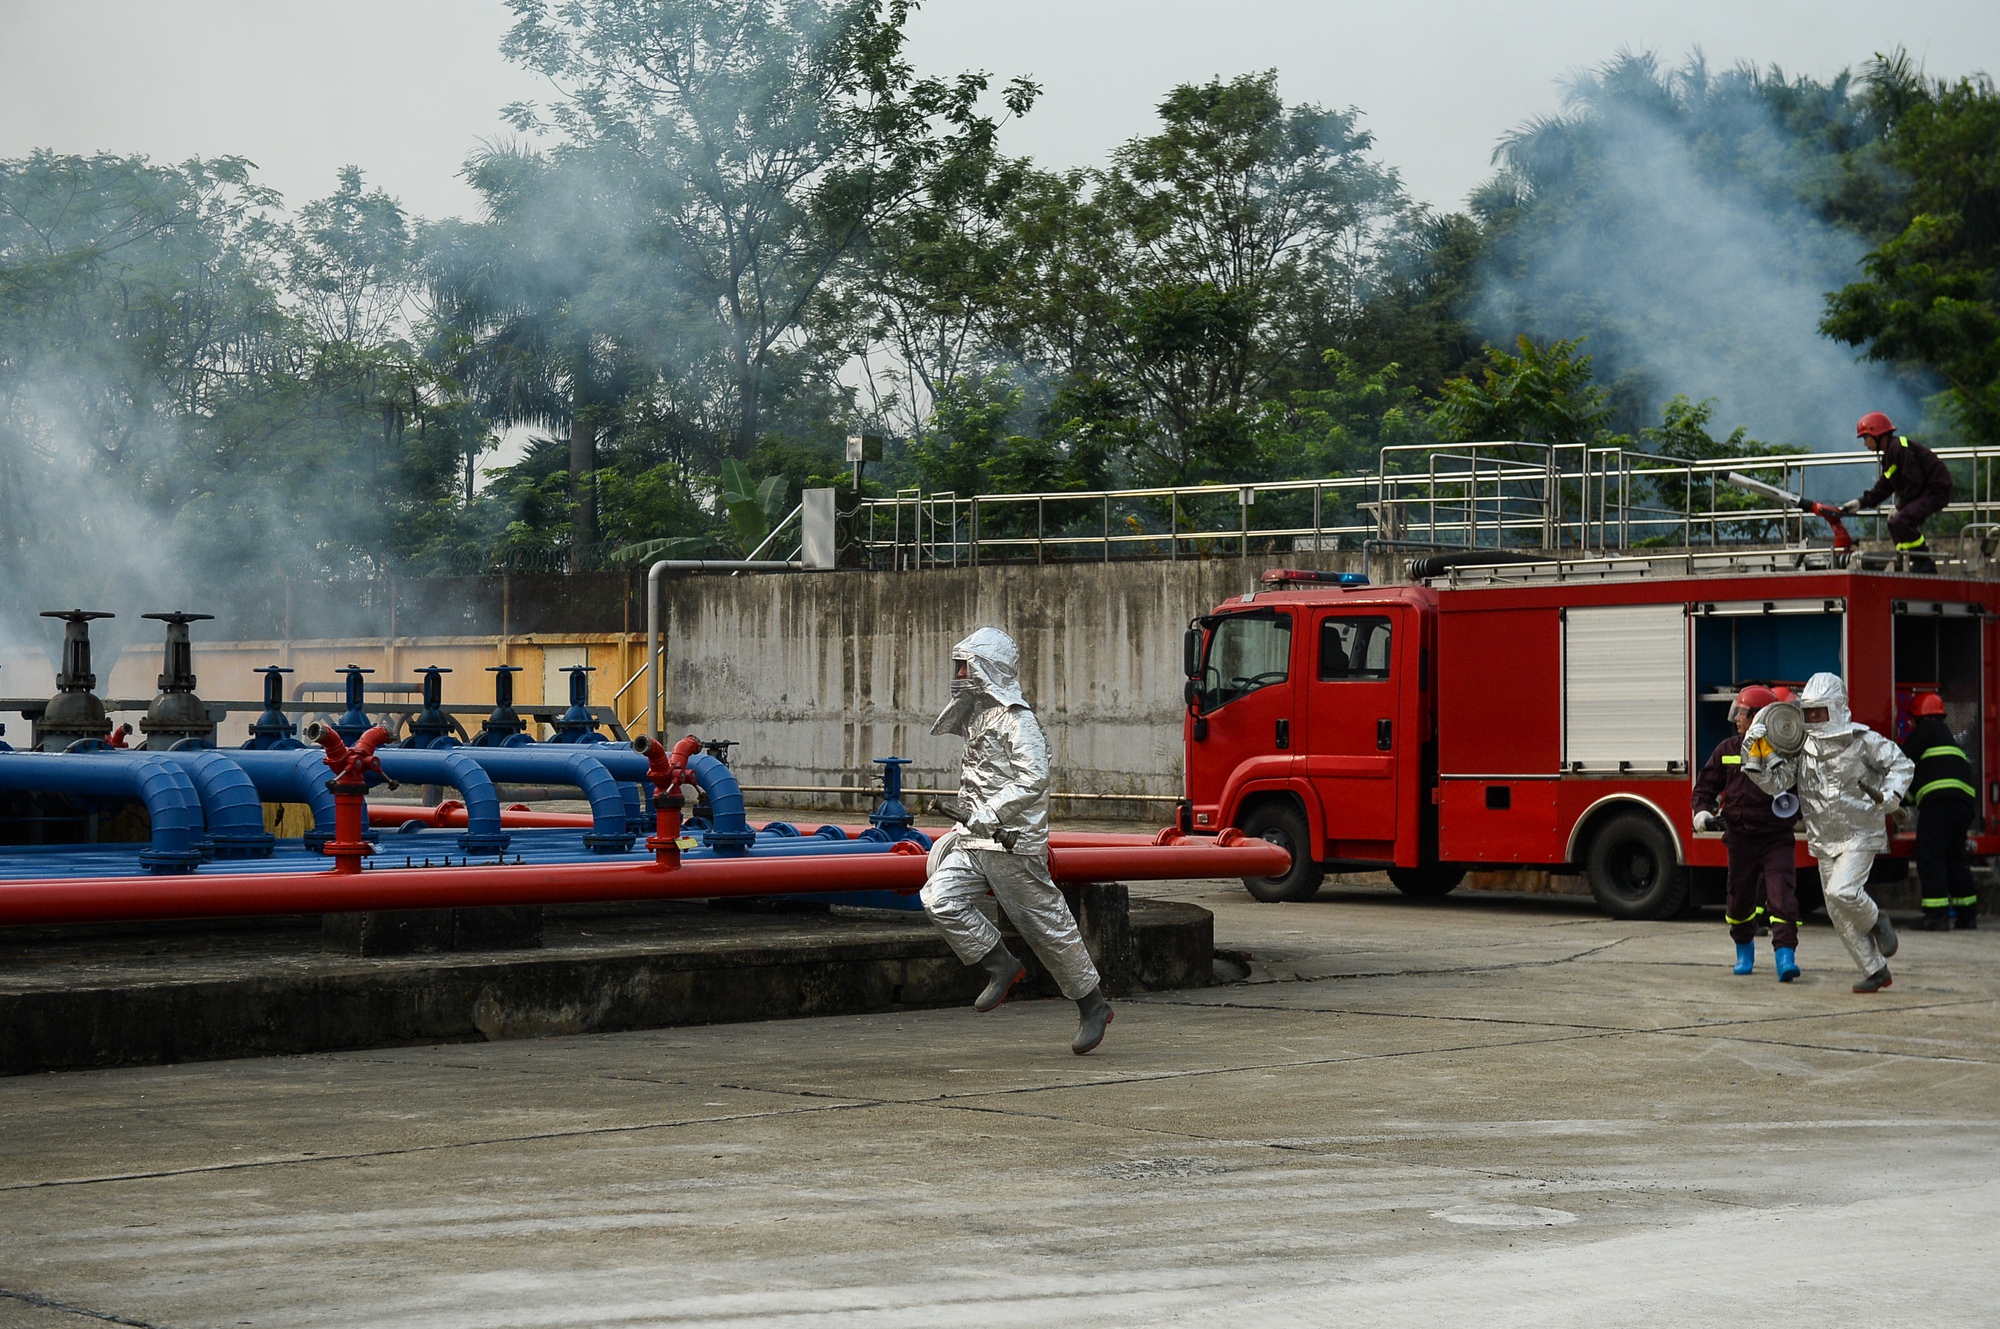 Phương án xử lý chữa cháy và cứu nạn, cứu hộ tại Tổng kho Xăng dầu Đức Giang - Ảnh 4.